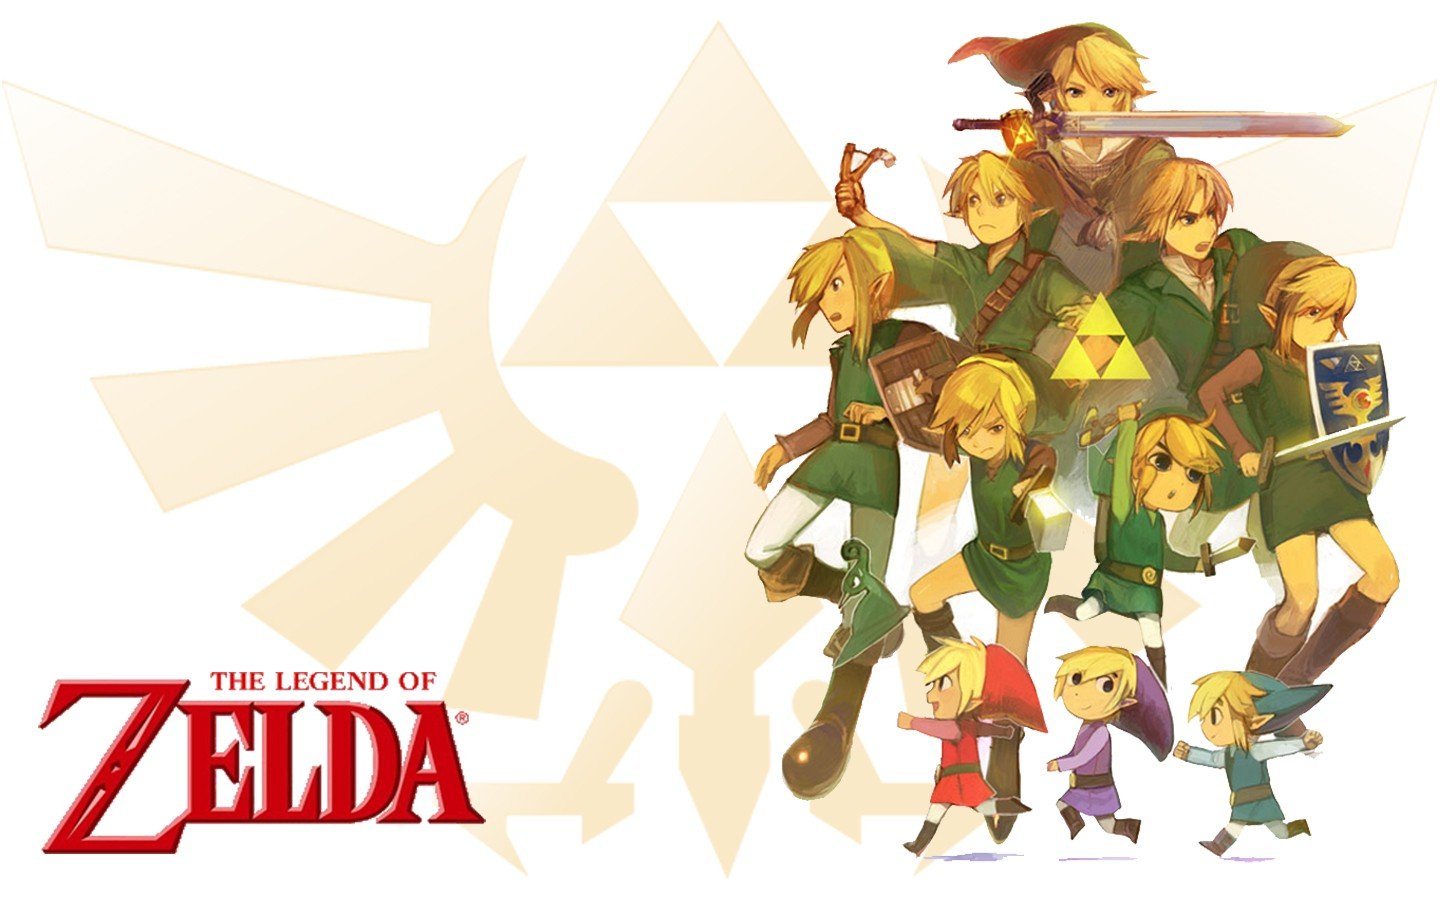 Zelda Wallpaper